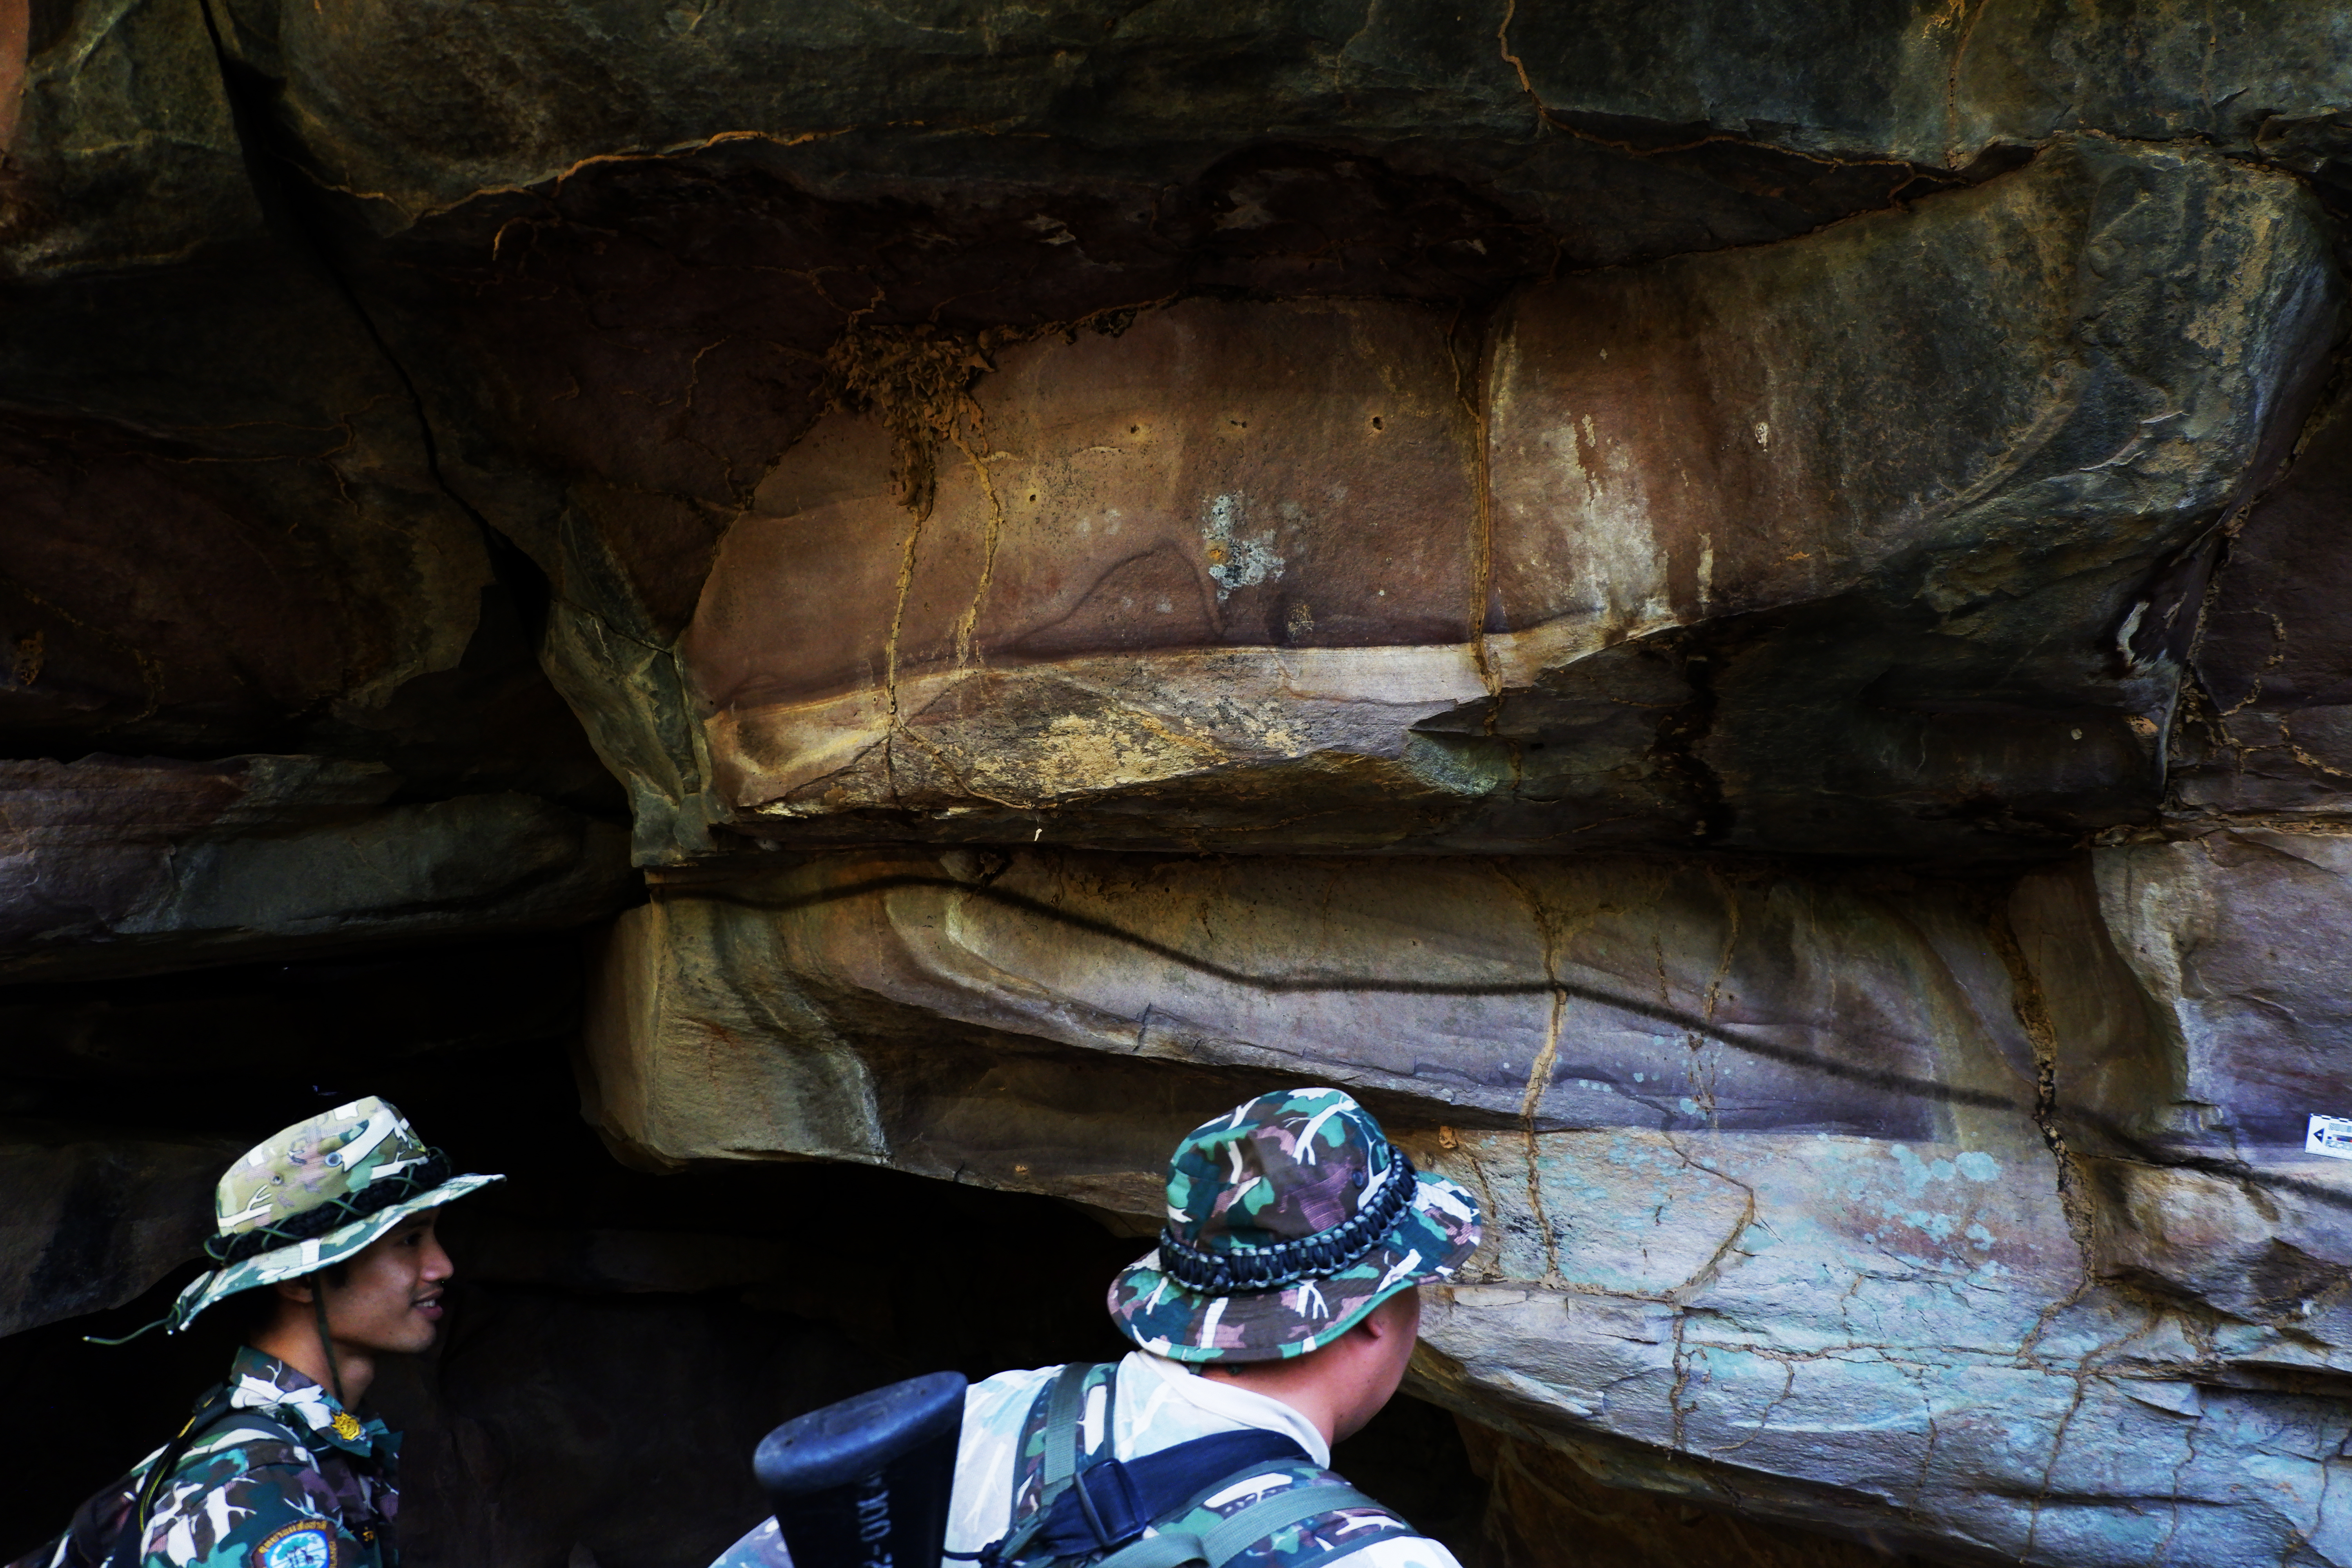 สำรวจแหล่งภาพเขียนสีถ้ำวีรยุทธ ๑ ในเขตอุทยานแห่งชาติน้ำพอง จังหวัดขอนแก่น